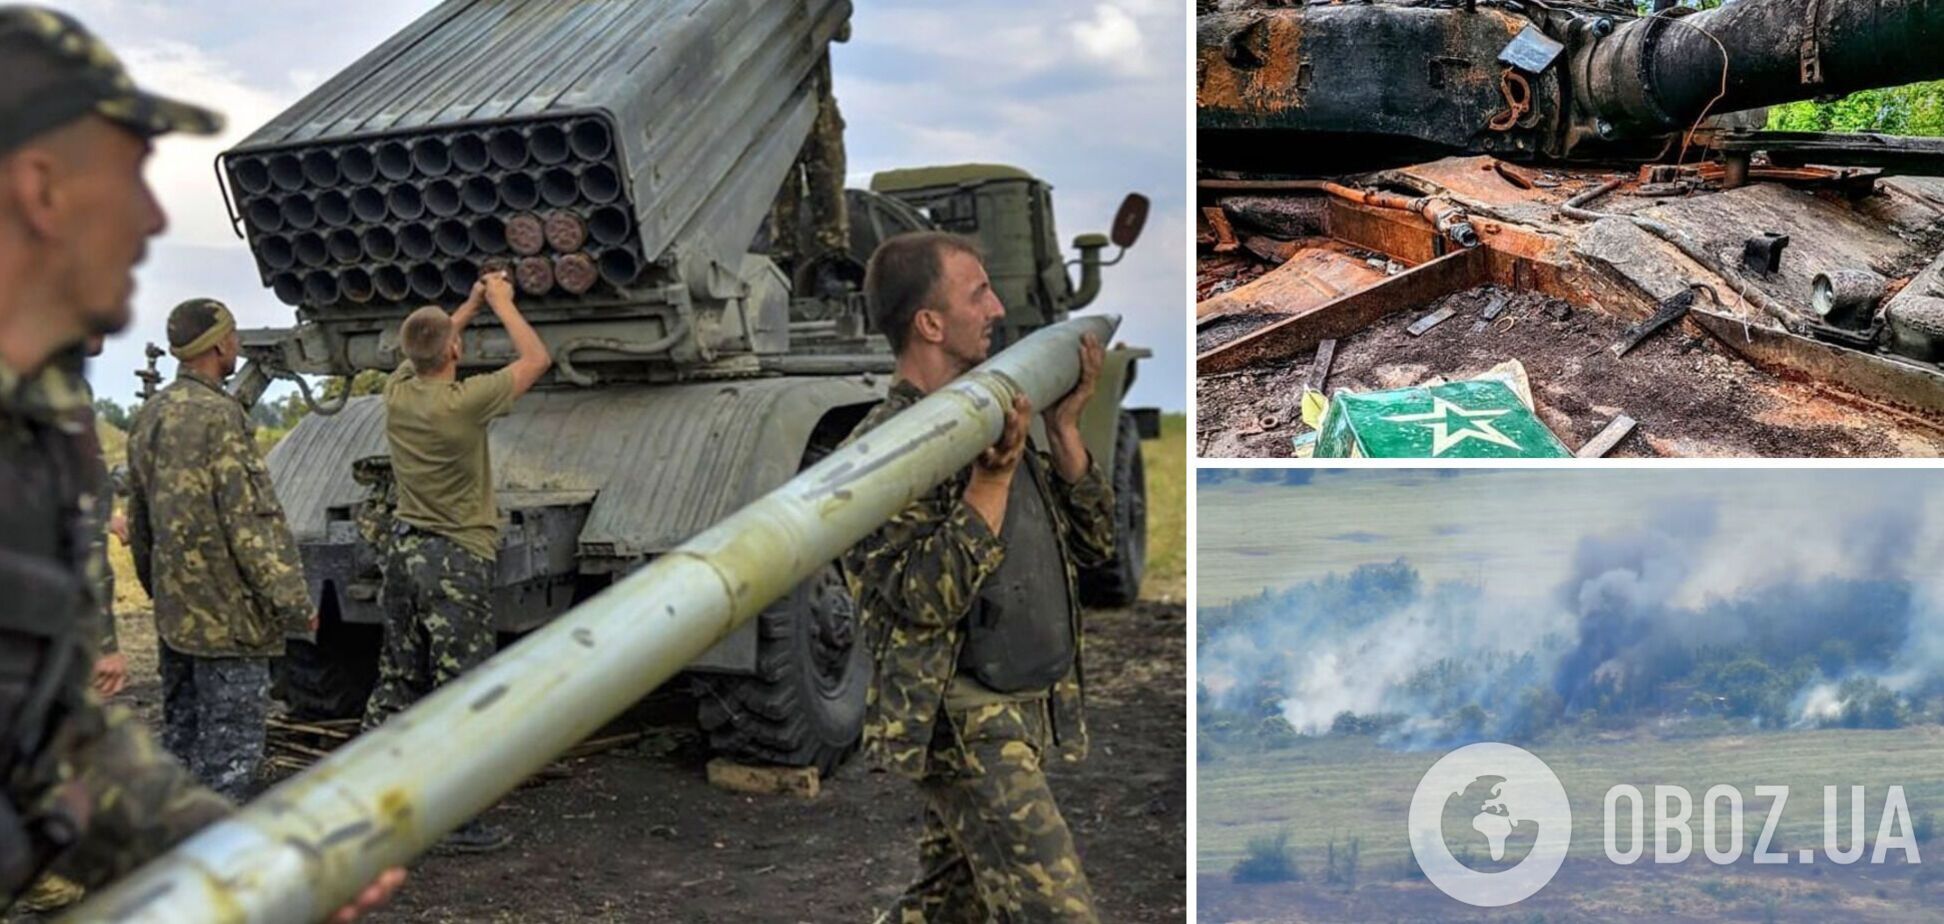 Пункт наблюдения, техника и взвод живой силы: украинские морпехи устроили 'адский смерч' оккупантам. Видео